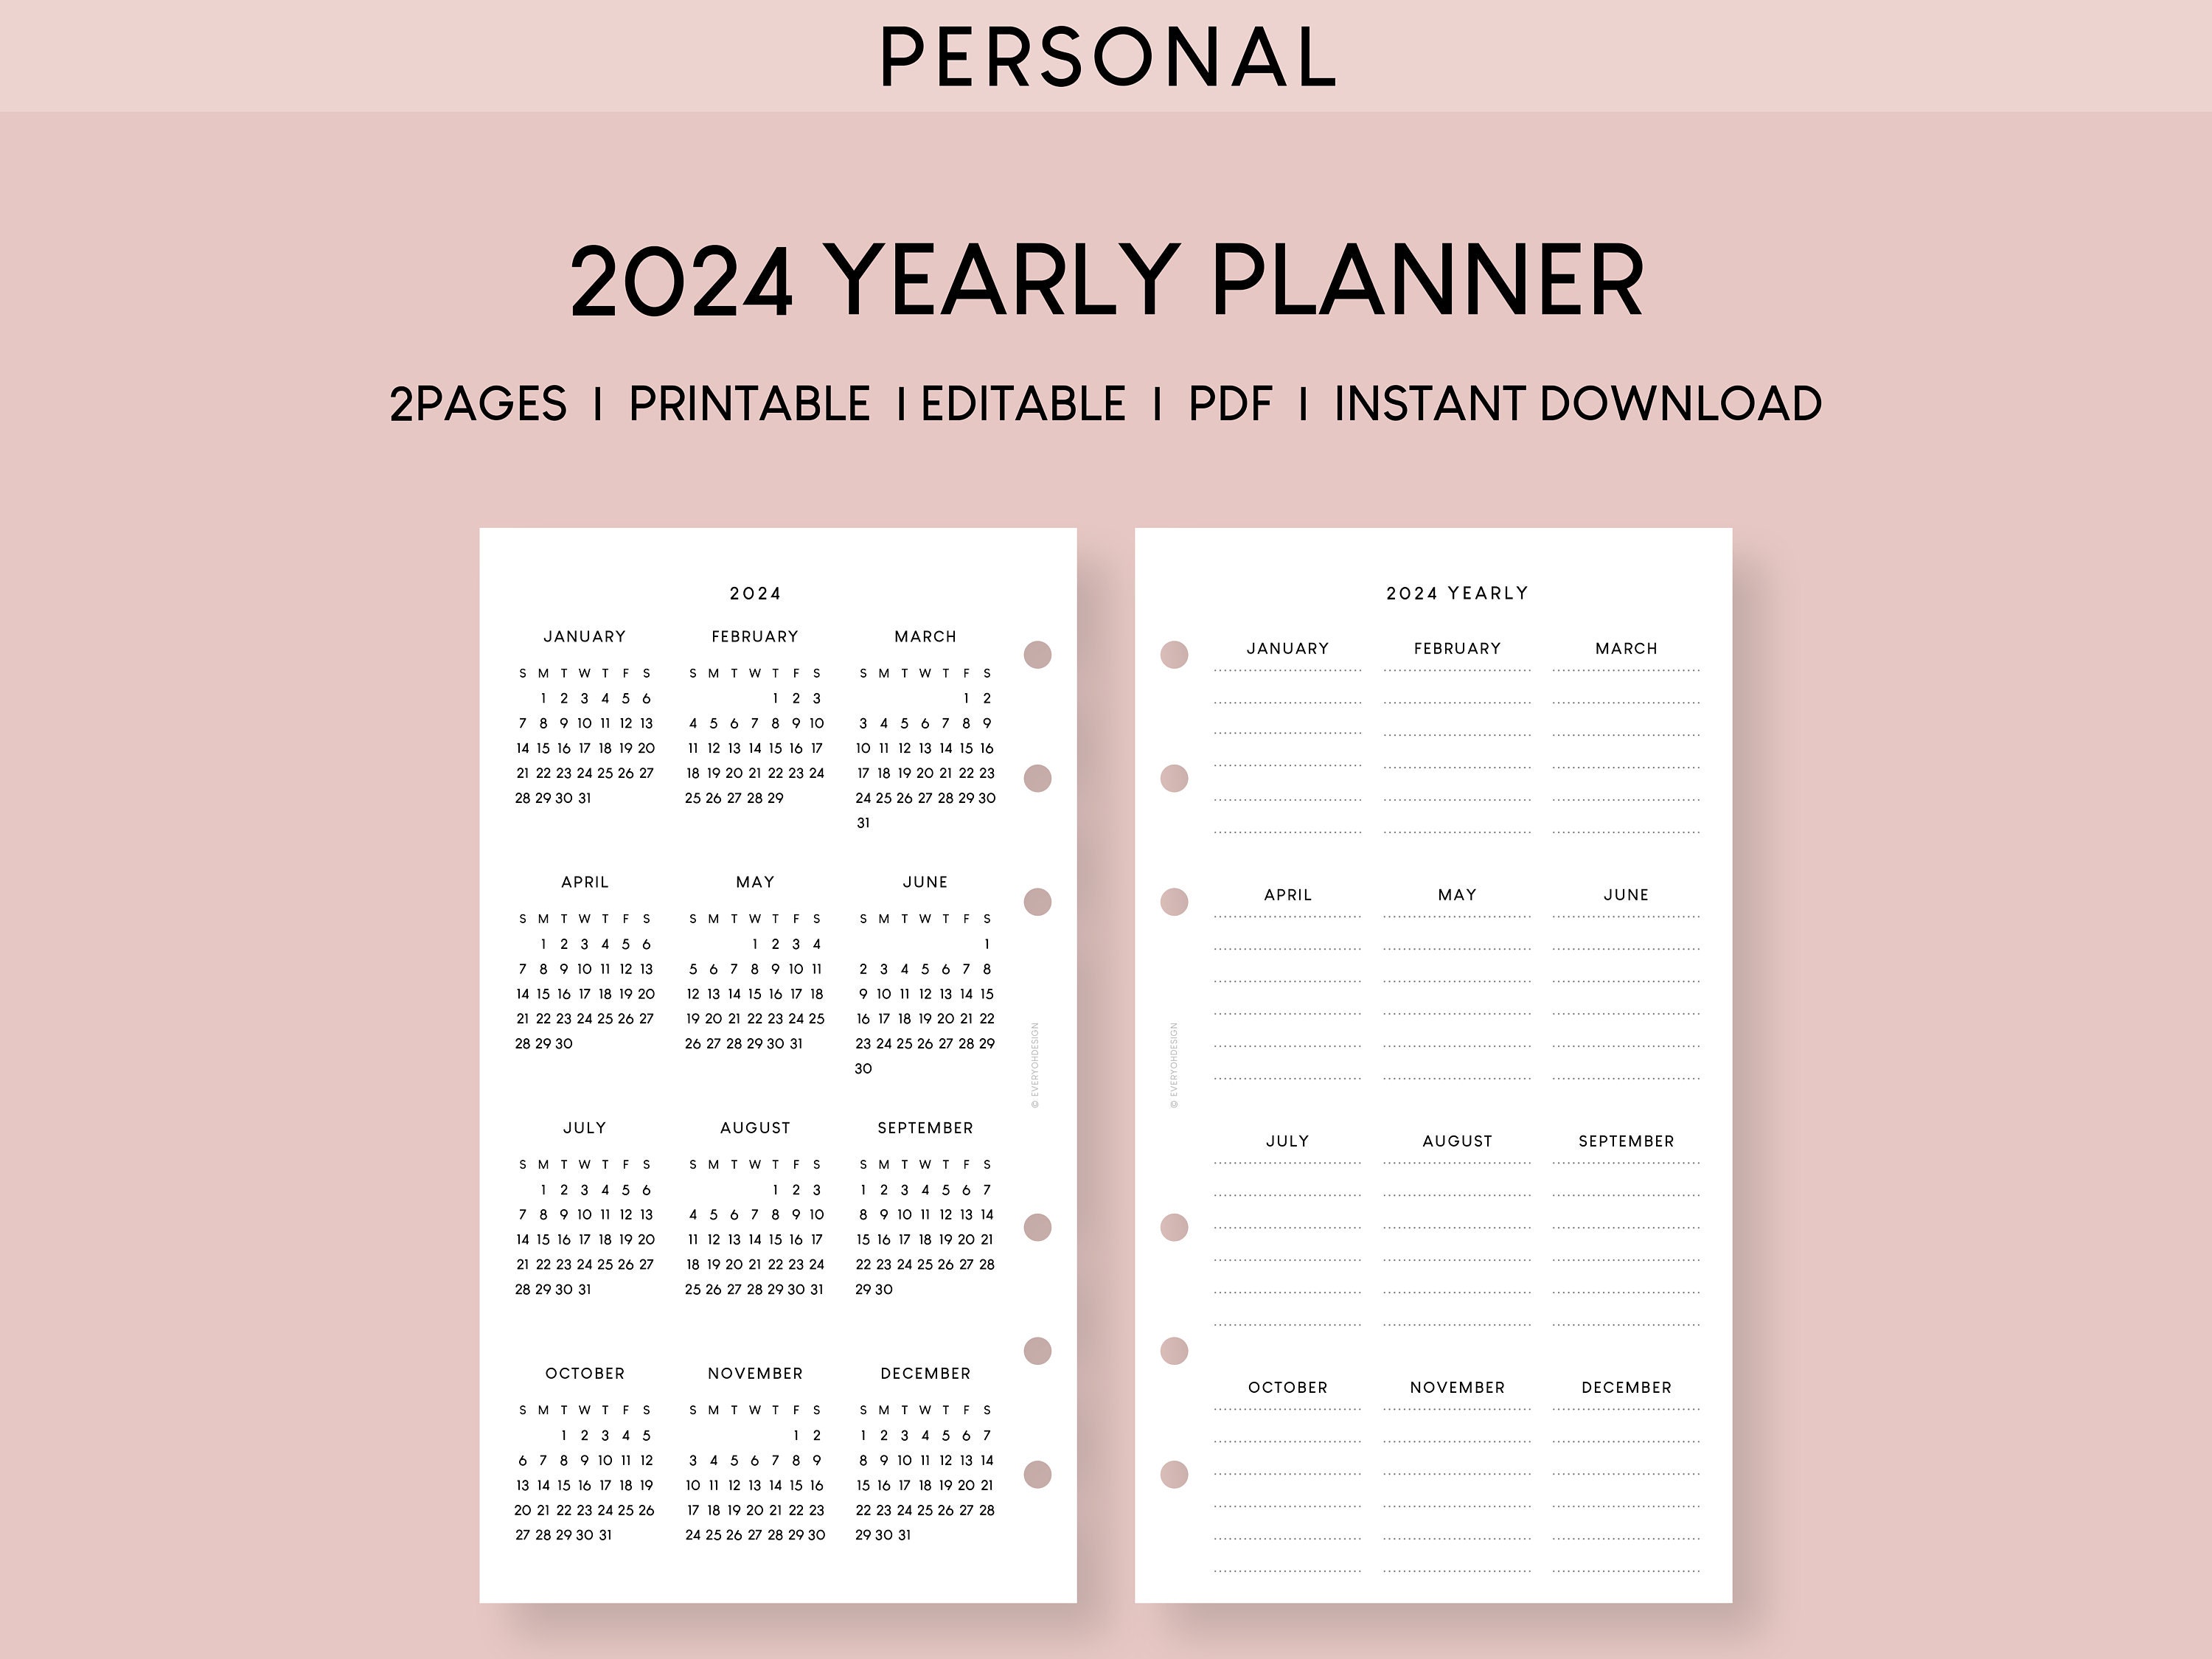 Agenda Semainier 2024: Planificateur et Organisateur Hebdomadaire | Vue  d'ensemble de l'année, de janvier à décembre | Calendrier 2024 avec jours